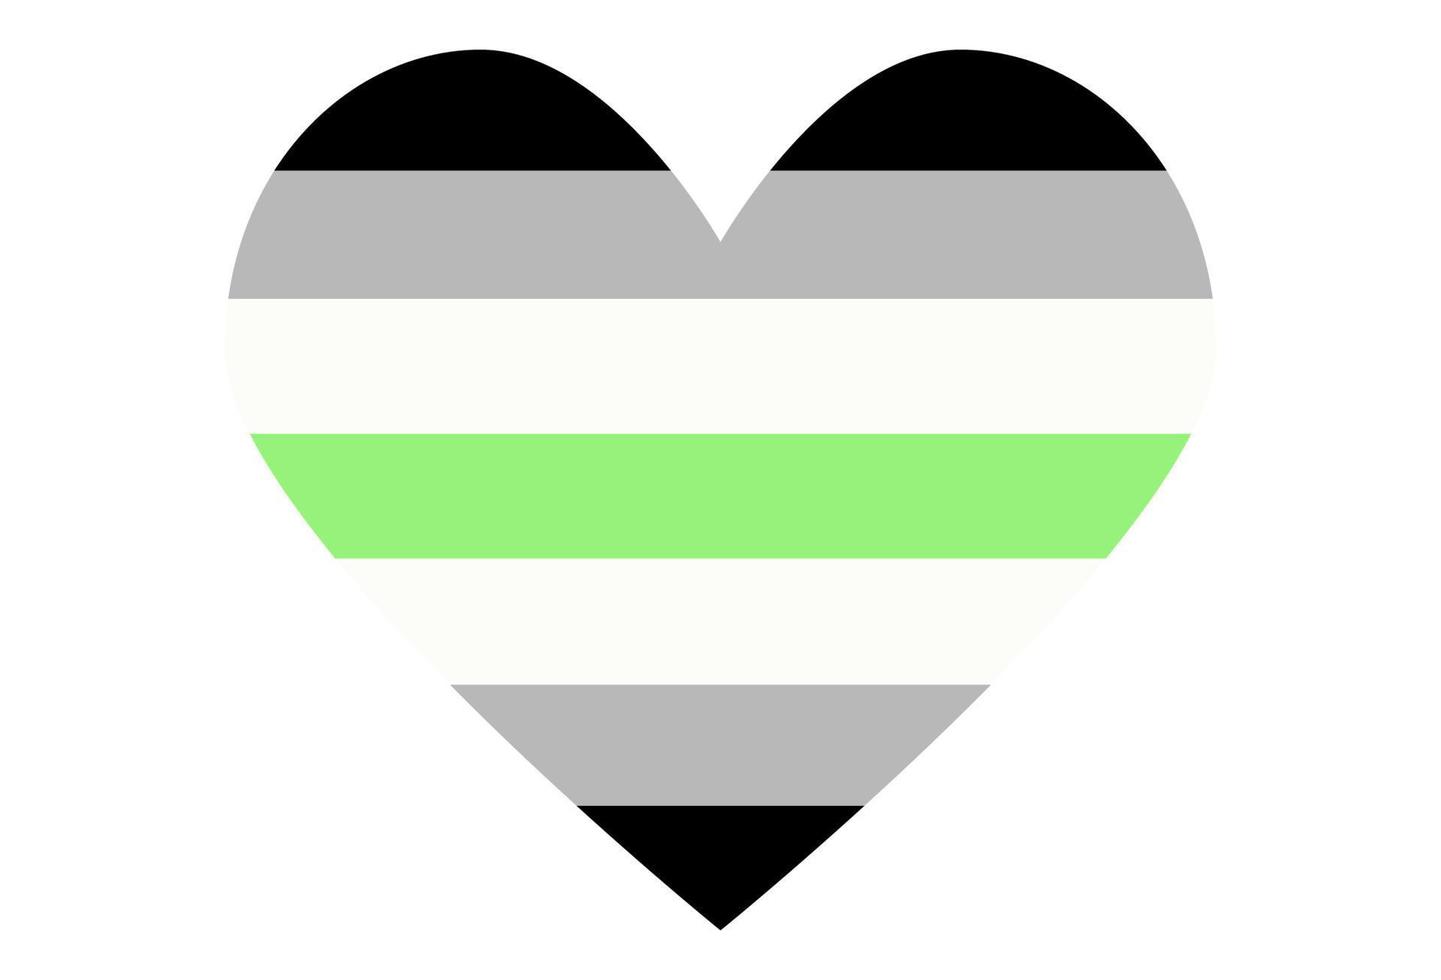 HBTQ stolthet flagga, regnbåge flagga bakgrund. flerfärgad fred flagga rörelse. original- färger symbol. vektor